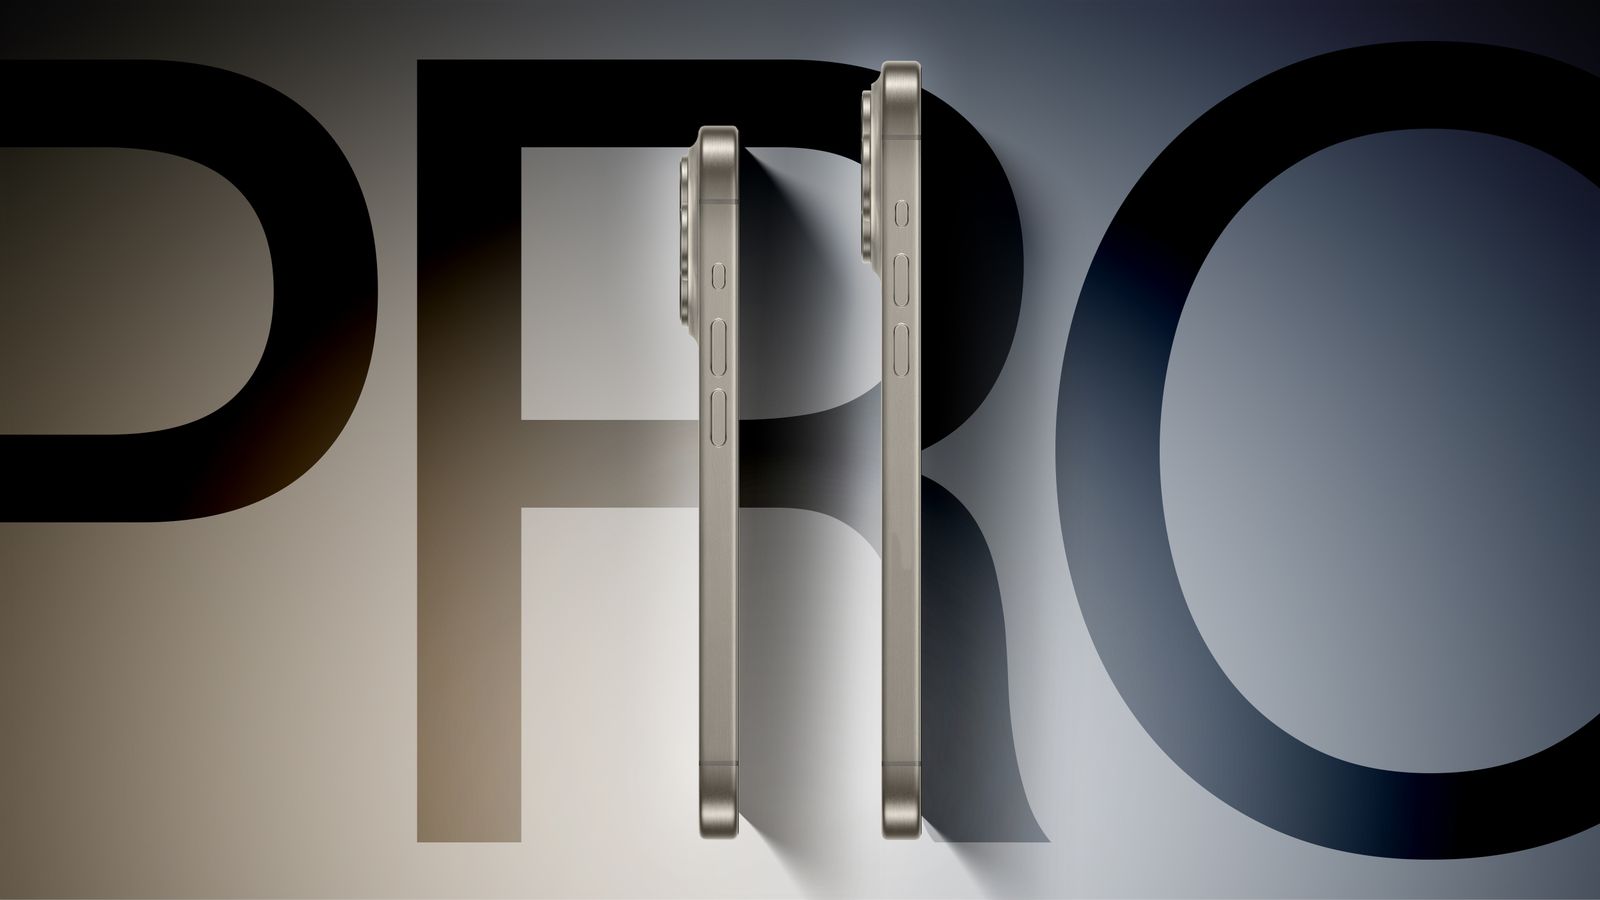 Um protótipo do iPhone 16 Pro (à esquerda) e outro do iPhone 16 Pro Max (à direita), ambos na vertical, mas de perfil, com o ecrã virado para a direita, mostrando os botões de volume e o botão de ação. Atrás, a palavra "PRO".